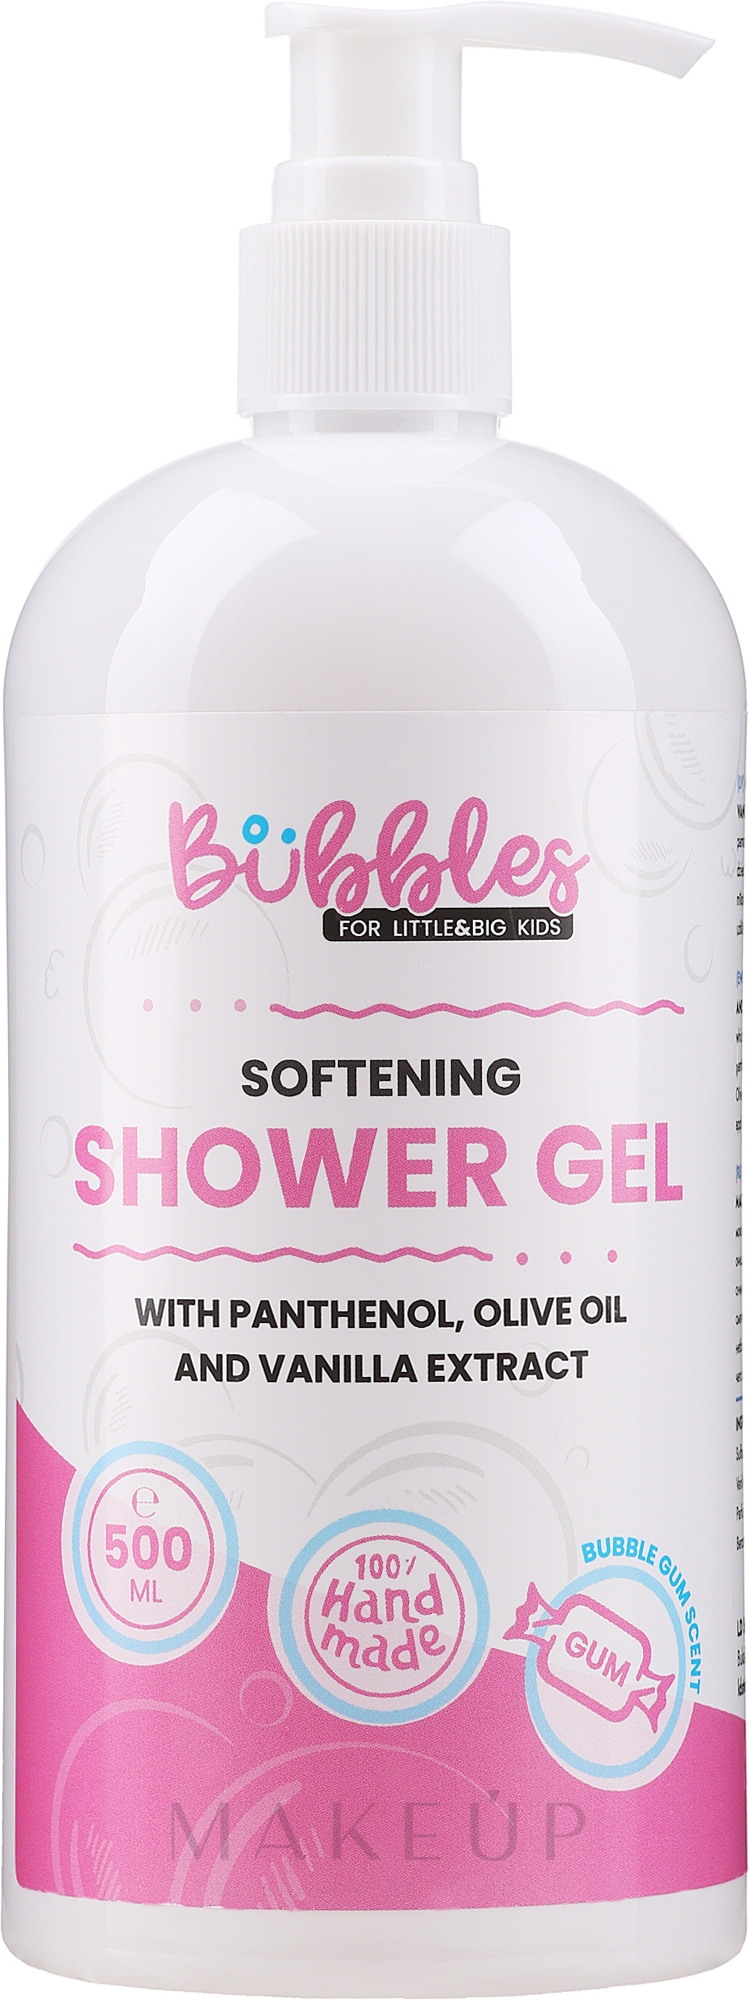 Weichmachendes Duschgel für Kinder mit Panthenol, Olivenöl und Vanilleextrakt - Bubbles Softening Shower Gel — Bild 500 ml